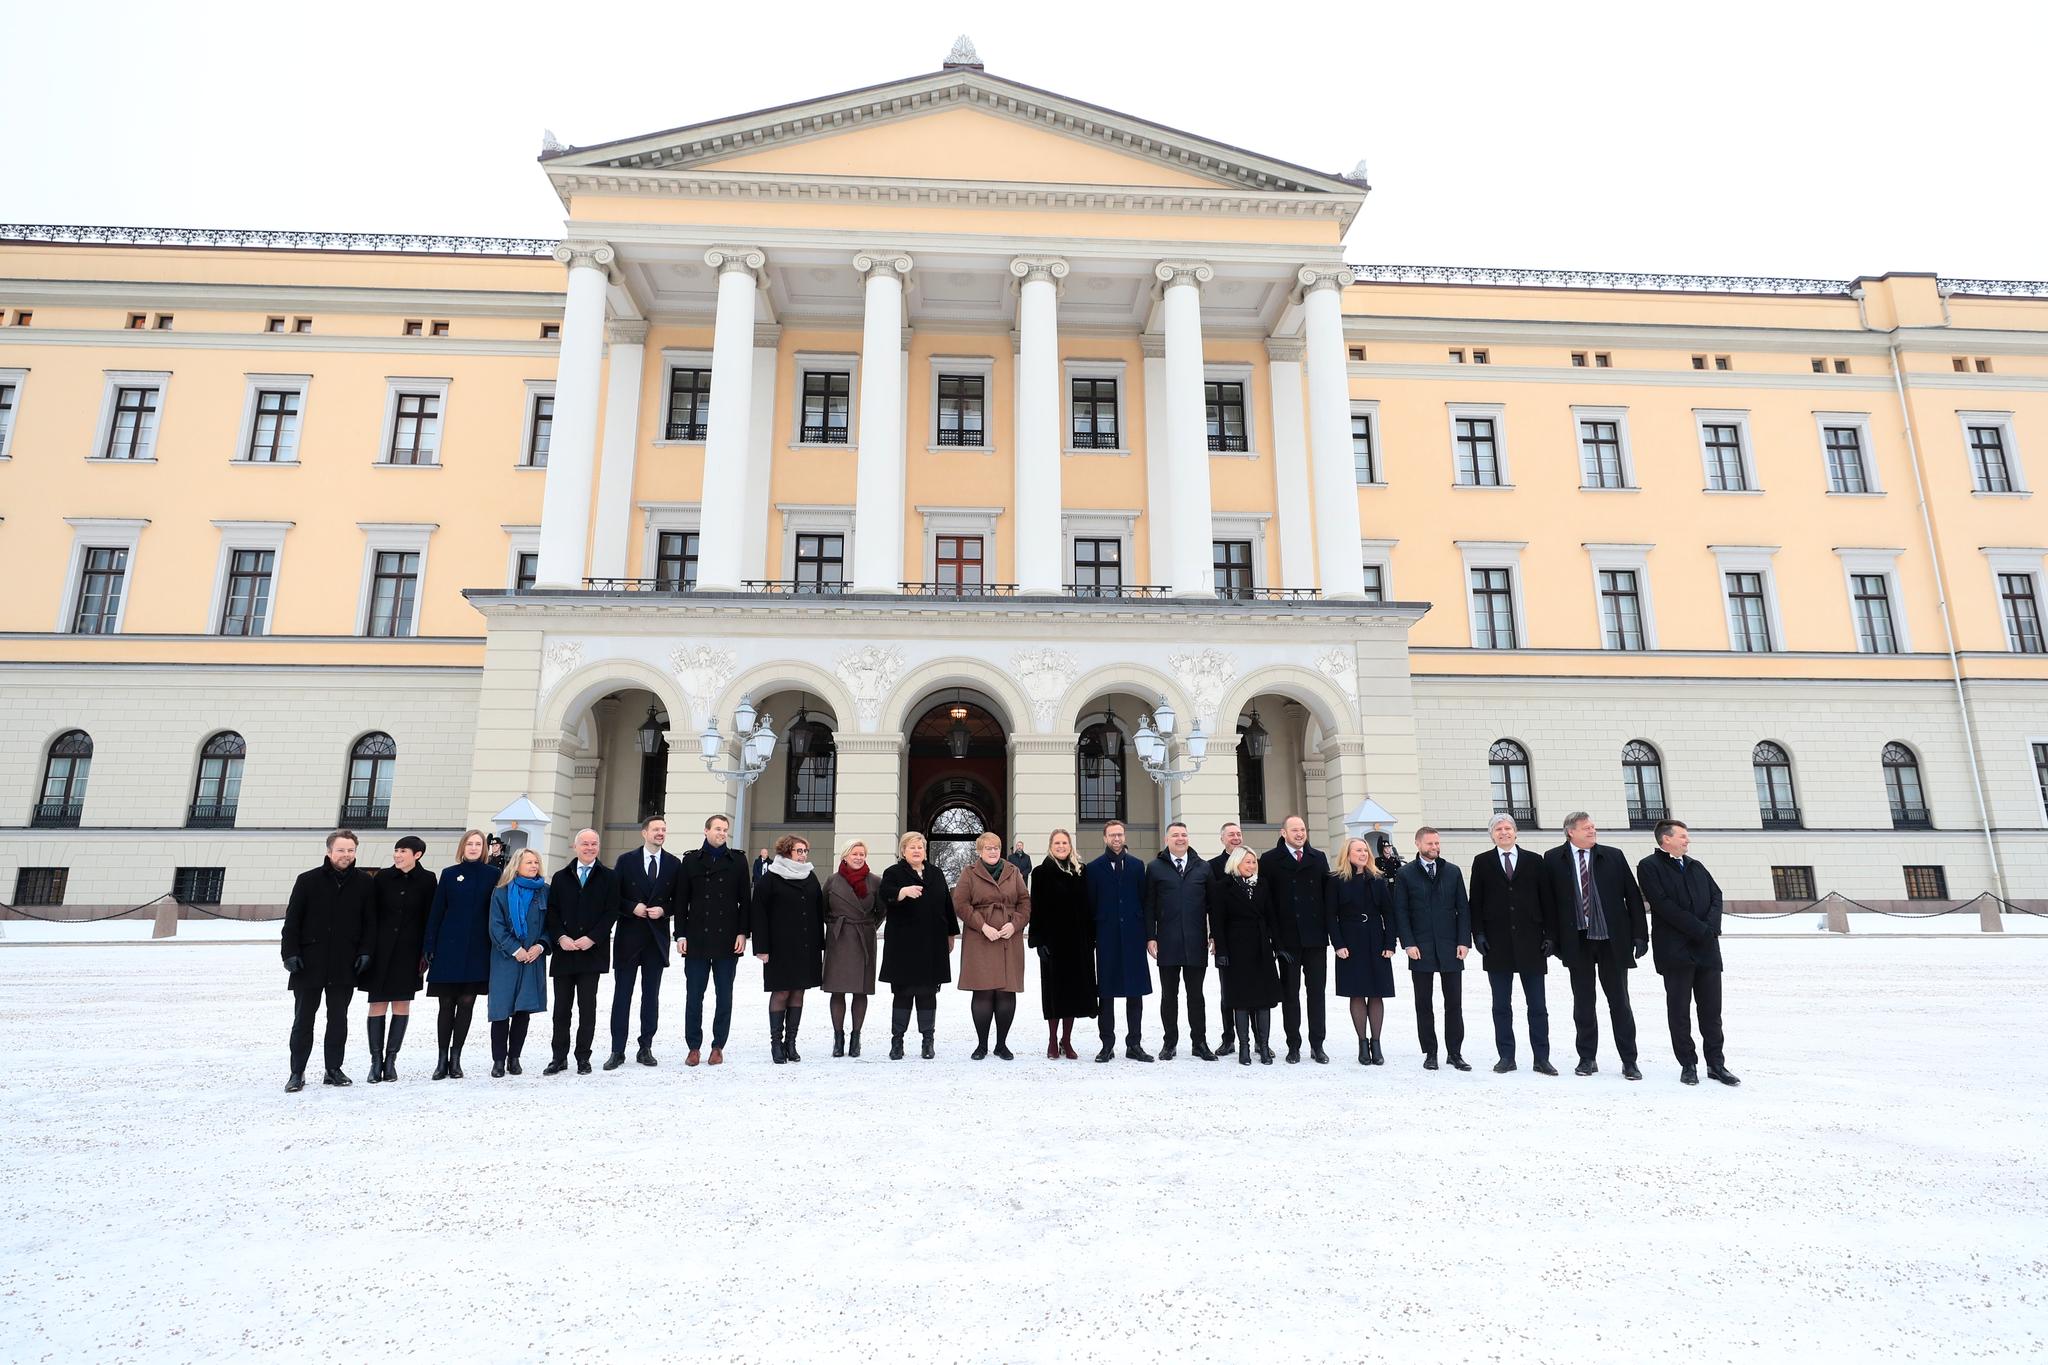 Den utvidede regjeringen ble presentert på Slottsplassen tirsdag formiddag. Med Frp, Høyre, Venstre og KrF i regjering er det hele 22 statsråder.